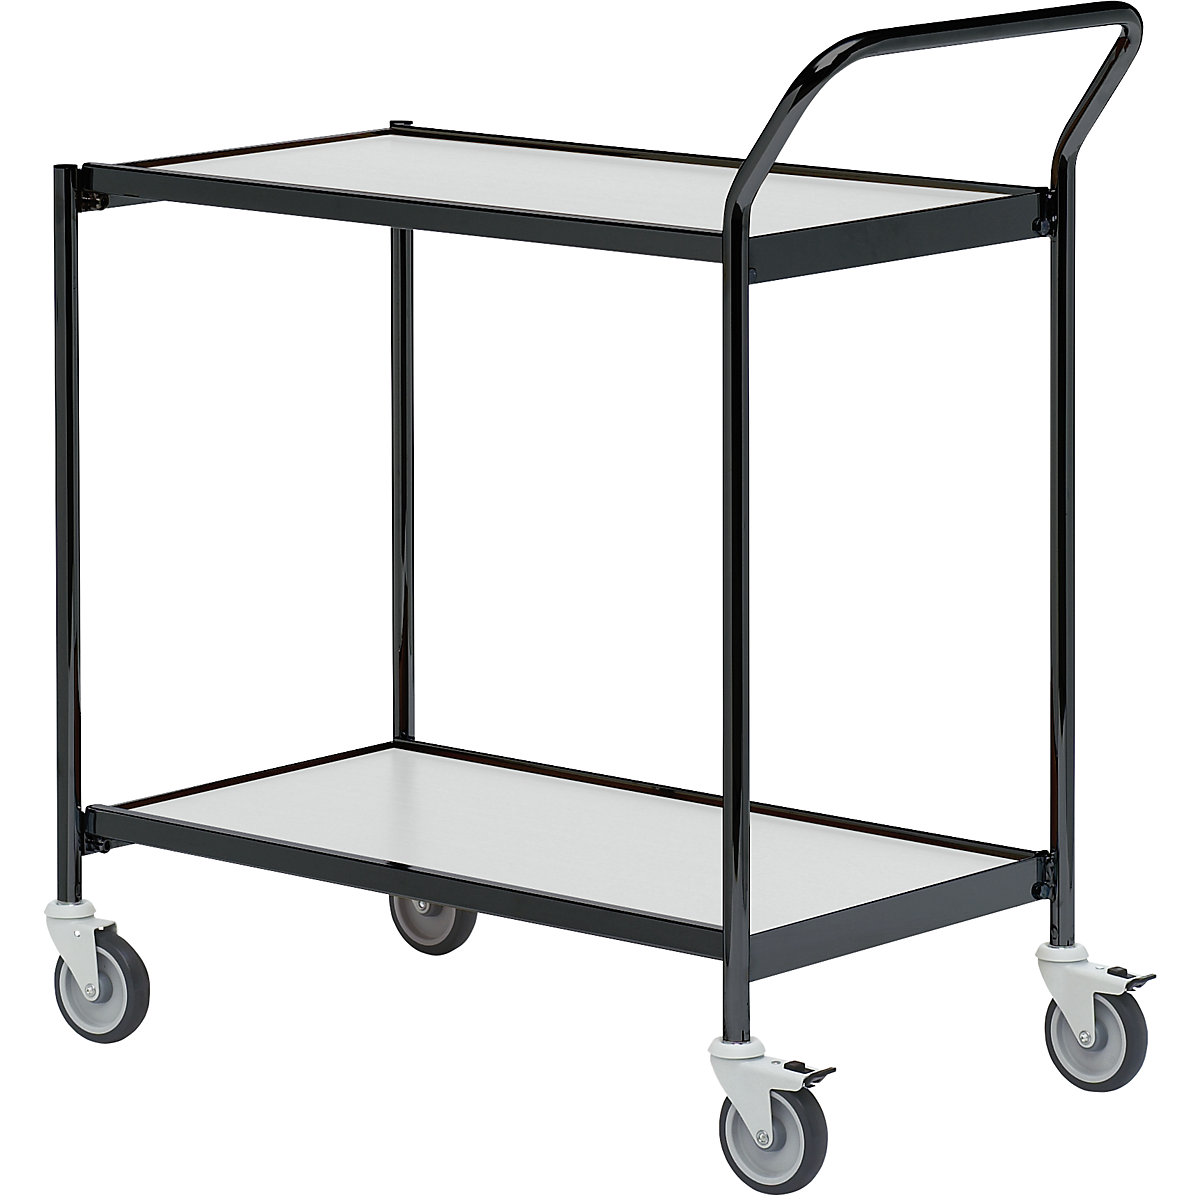 Stolový vozík – HelgeNyberg, 2 etáže, d x š 800 x 420 mm, černá / šedá, od 5 ks-33